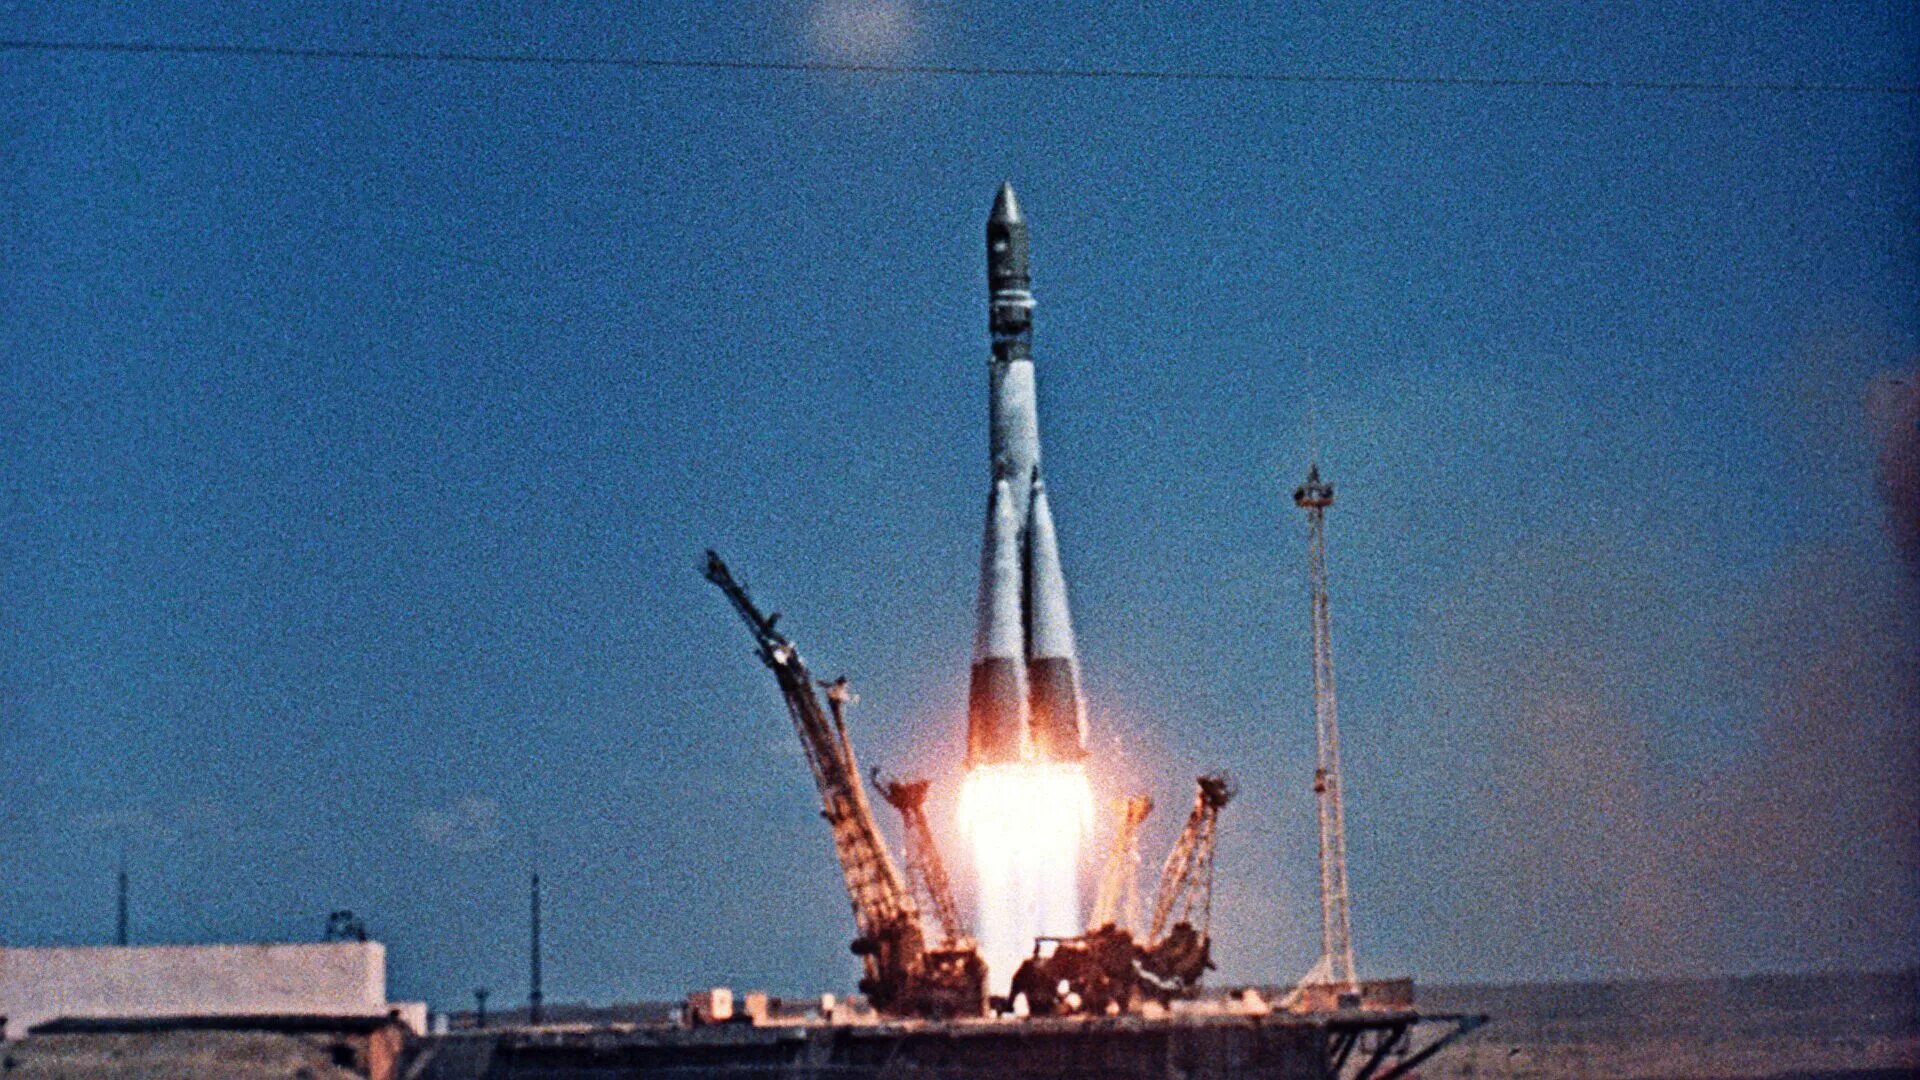 Гагарин первый в космосе на каком корабле. Космический корабль Восток Юрия Гагарина 1961. Ракета Юрия Гагарина Восток-1. Первый космический корабль Гагарина Восток 1.